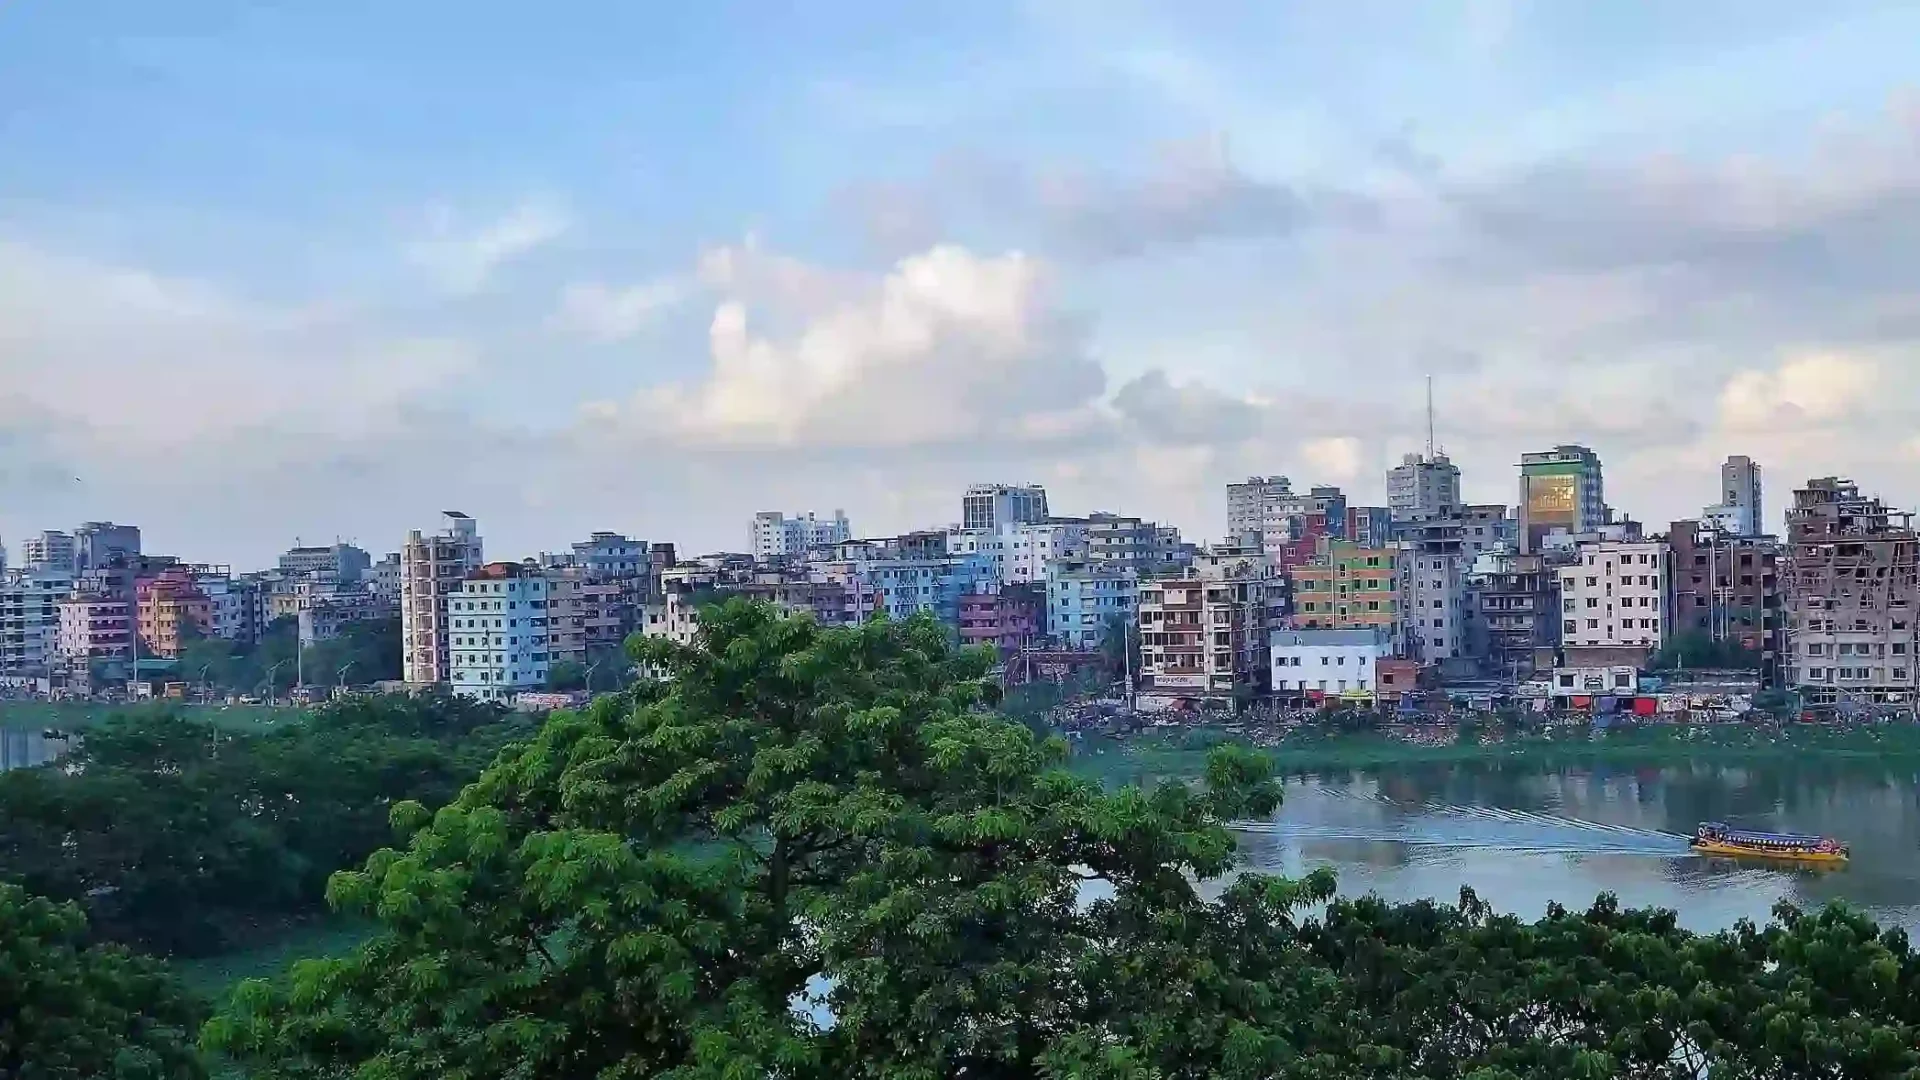 Cement in Bangladesh: Building a Concrete Future